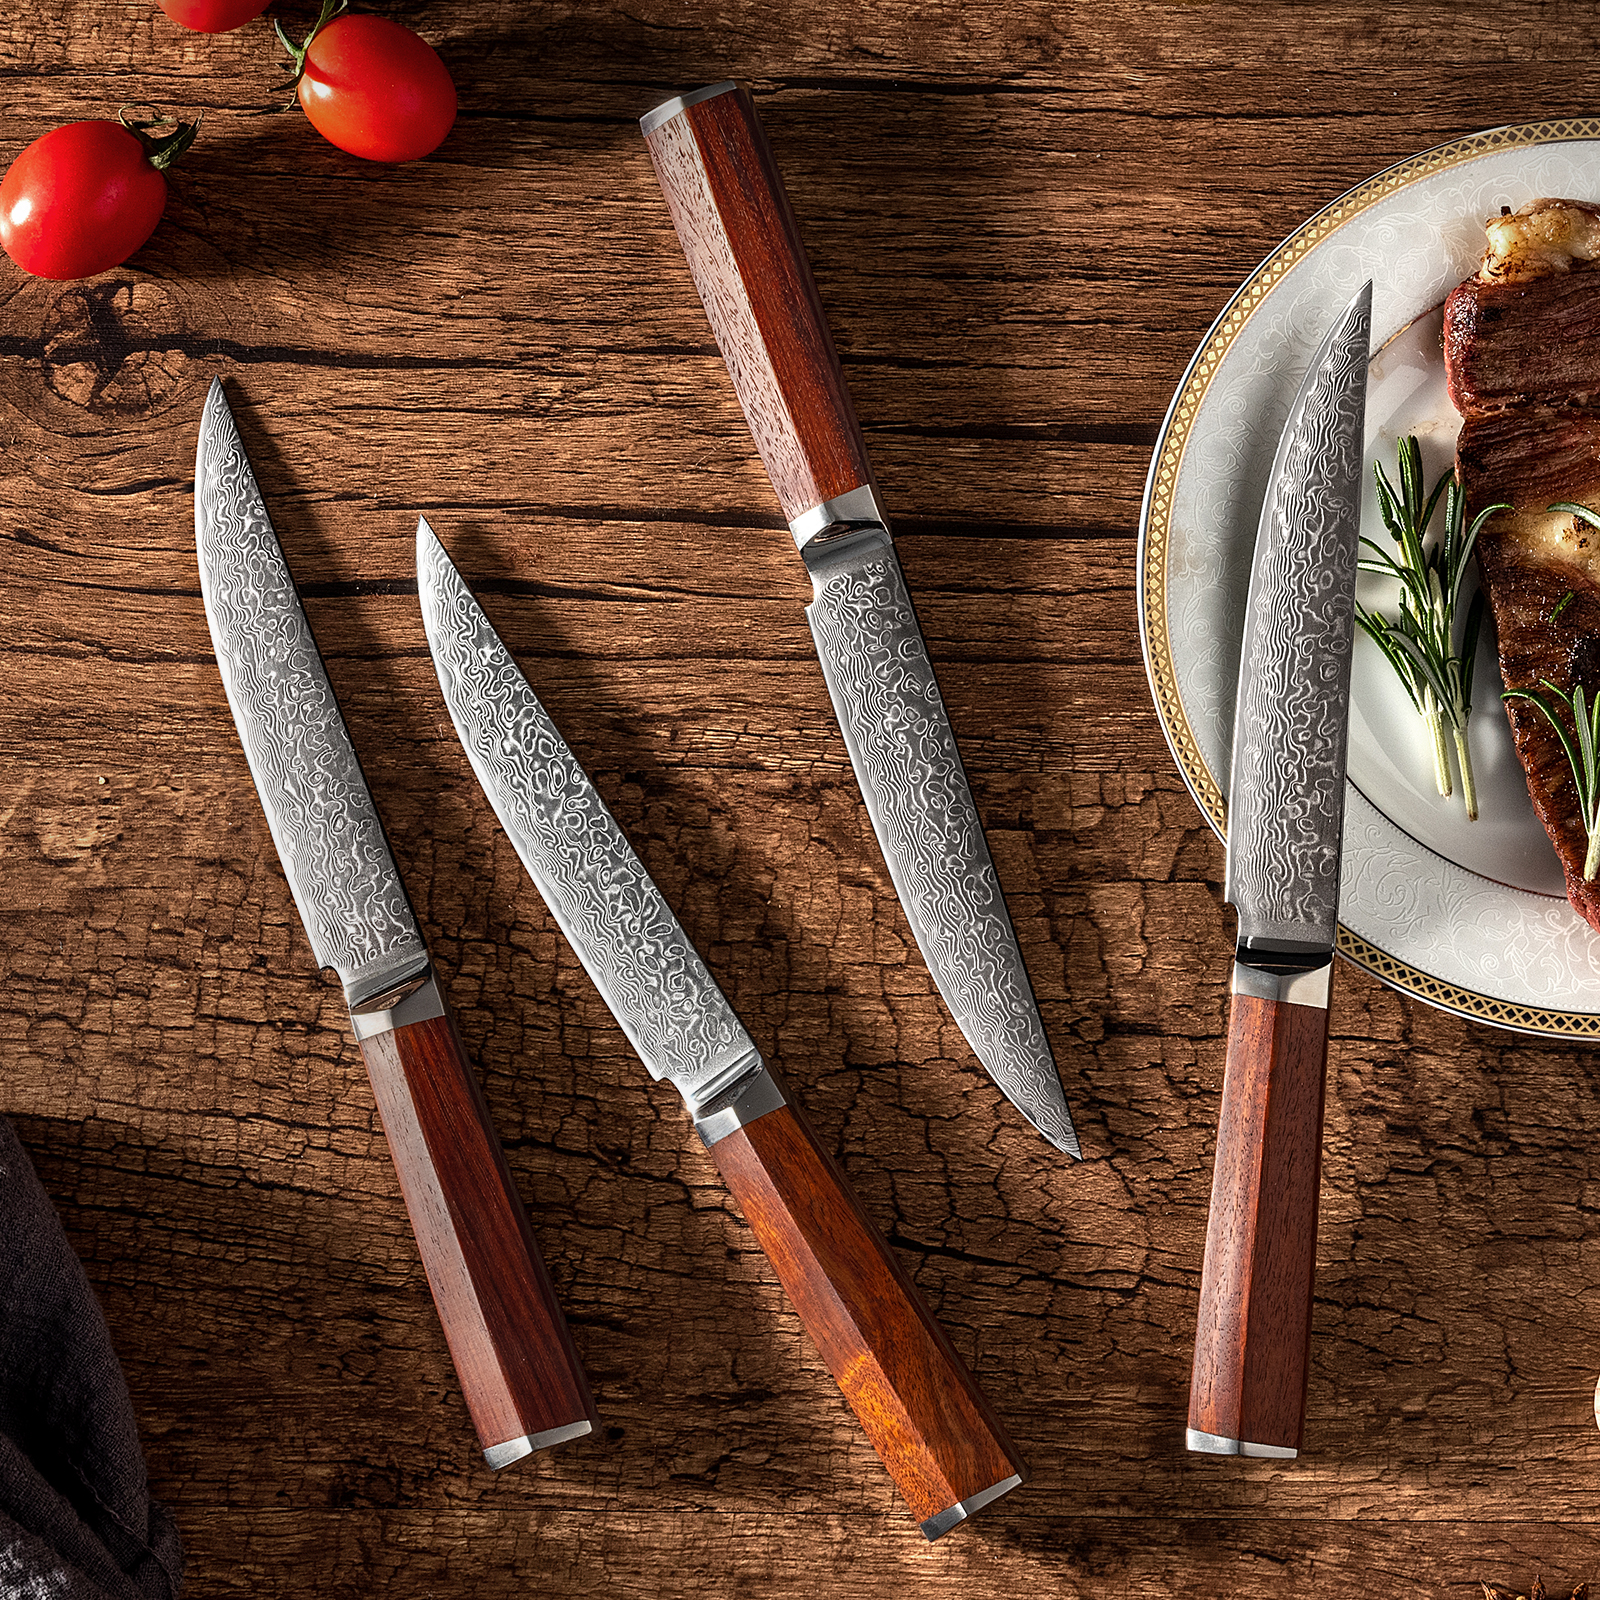 Fzkaly Steak Knives Set of 4, Japanese Damascus Steak Knives in Drawer  Knife Block, 5 Straight Edge Blade, Ergonomic Olive Wood Handle, Ideal For